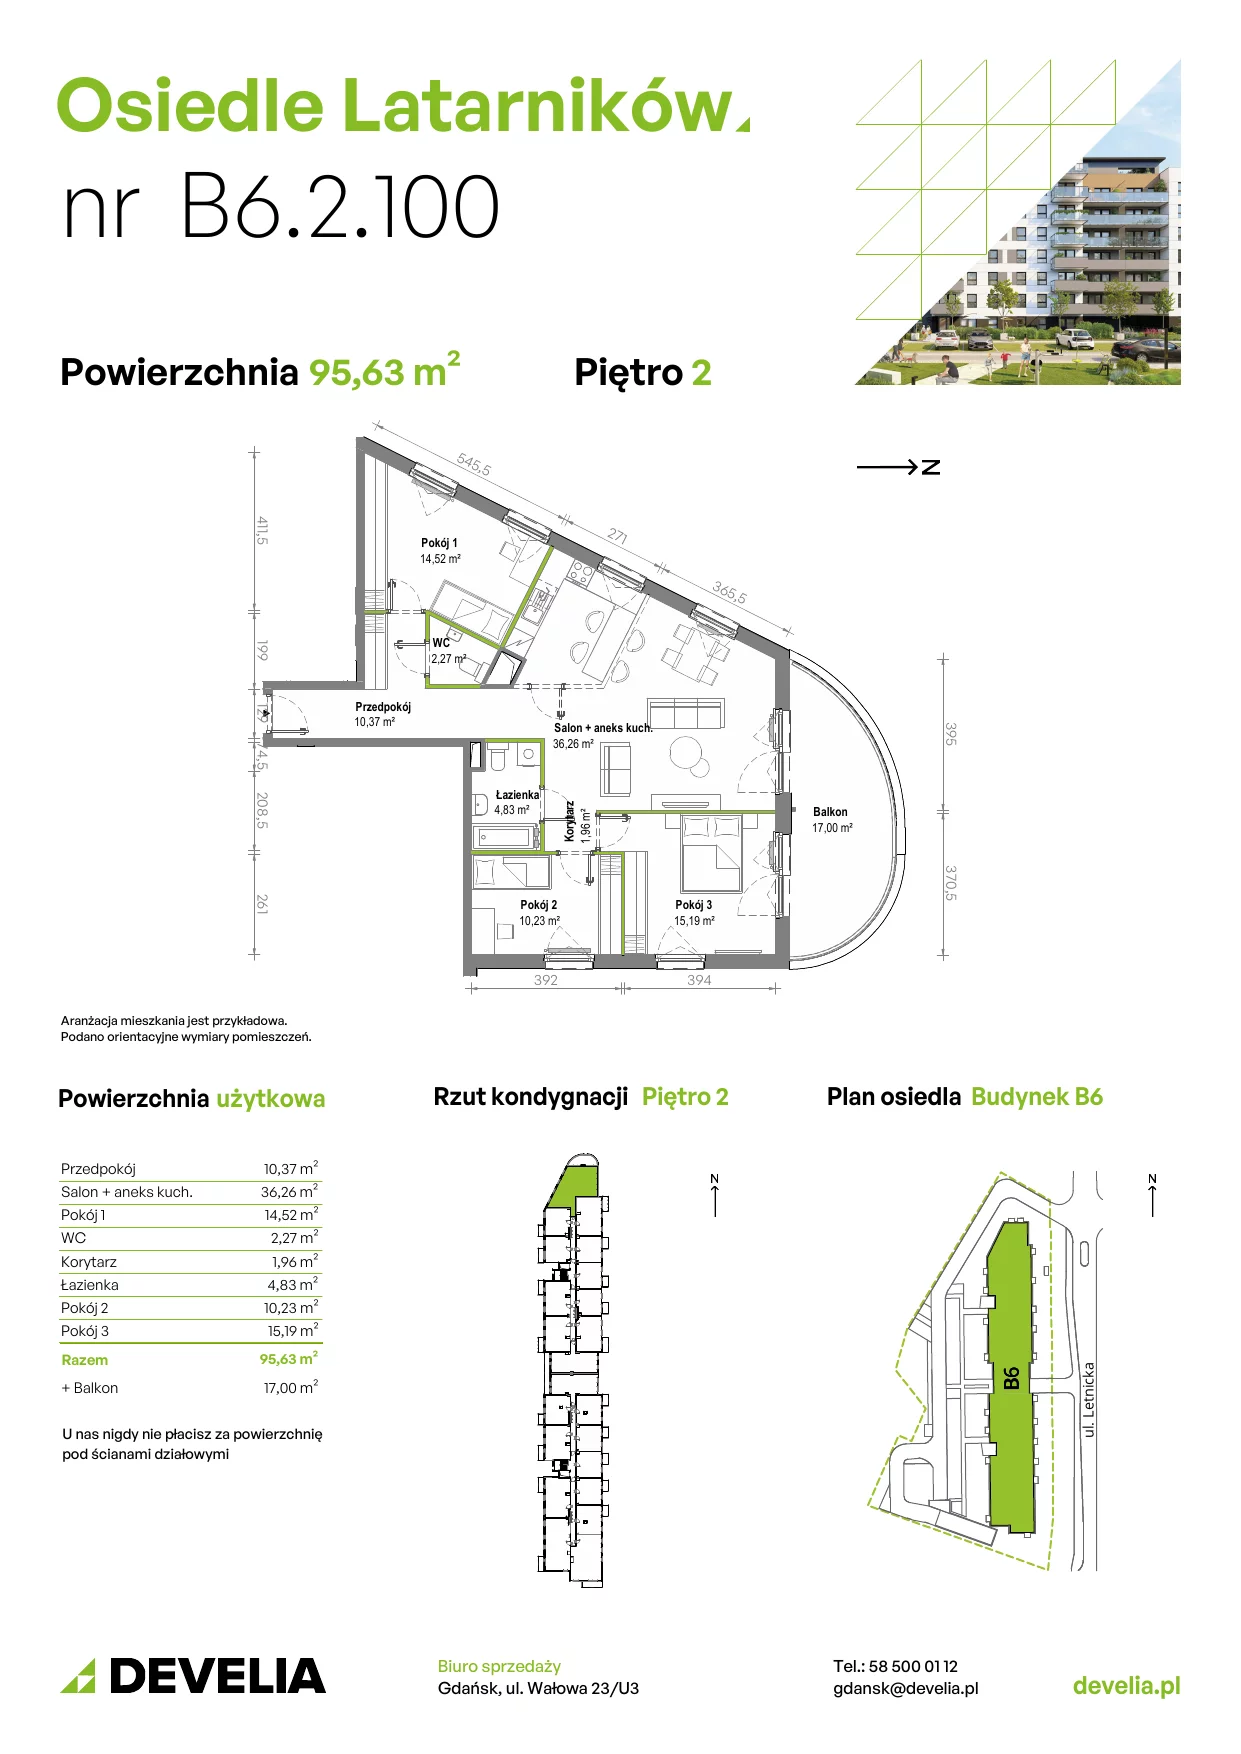 Mieszkanie 95,54 m², piętro 2, oferta nr B6.2.100, Osiedle Latarników, Gdańsk, Letnica, ul. Letnicka 1